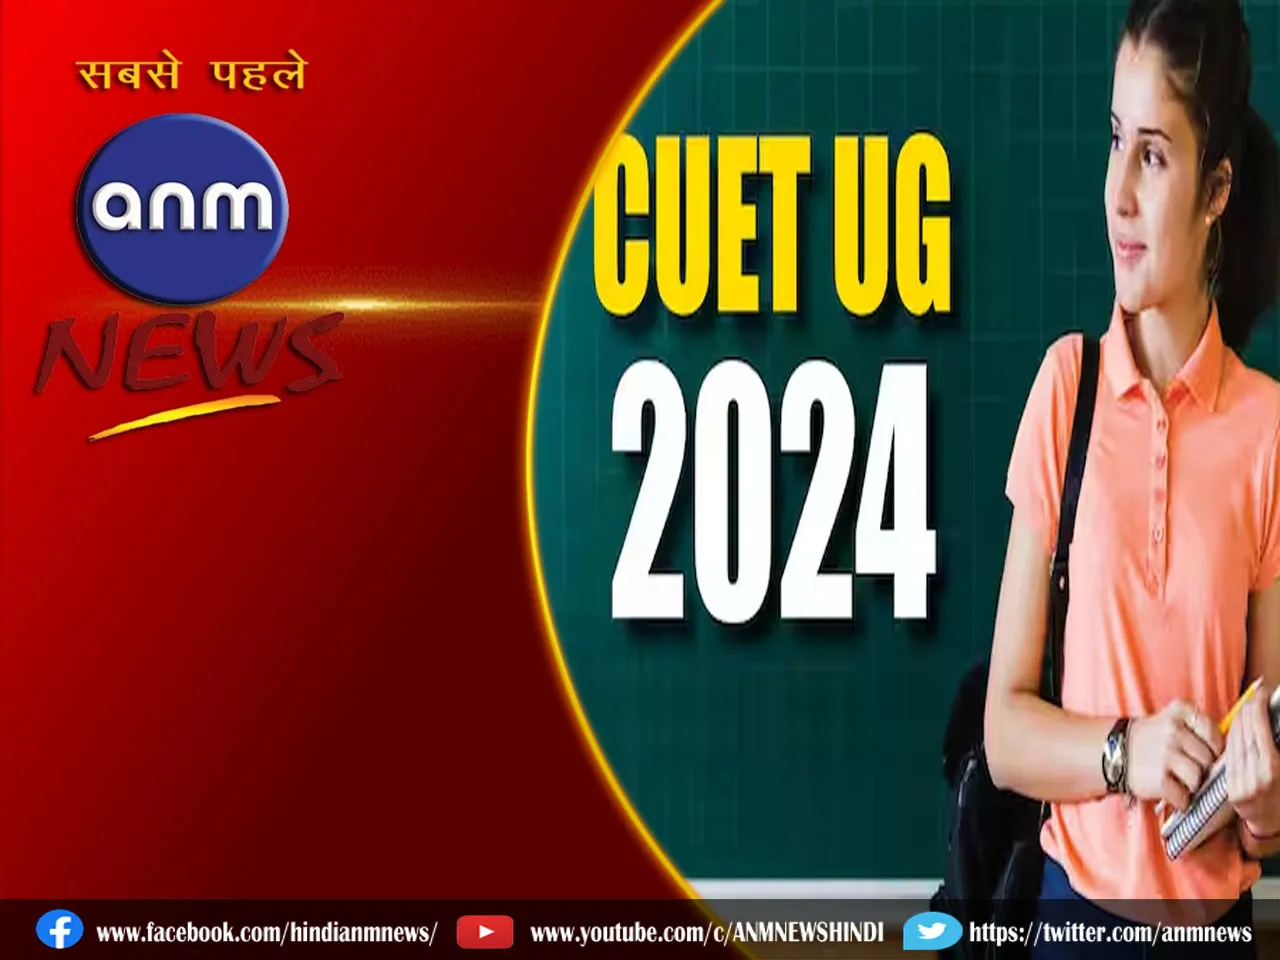 CUET UG 2024: यहां देखें CUET UG 2024 का पूरा शेड्यूल